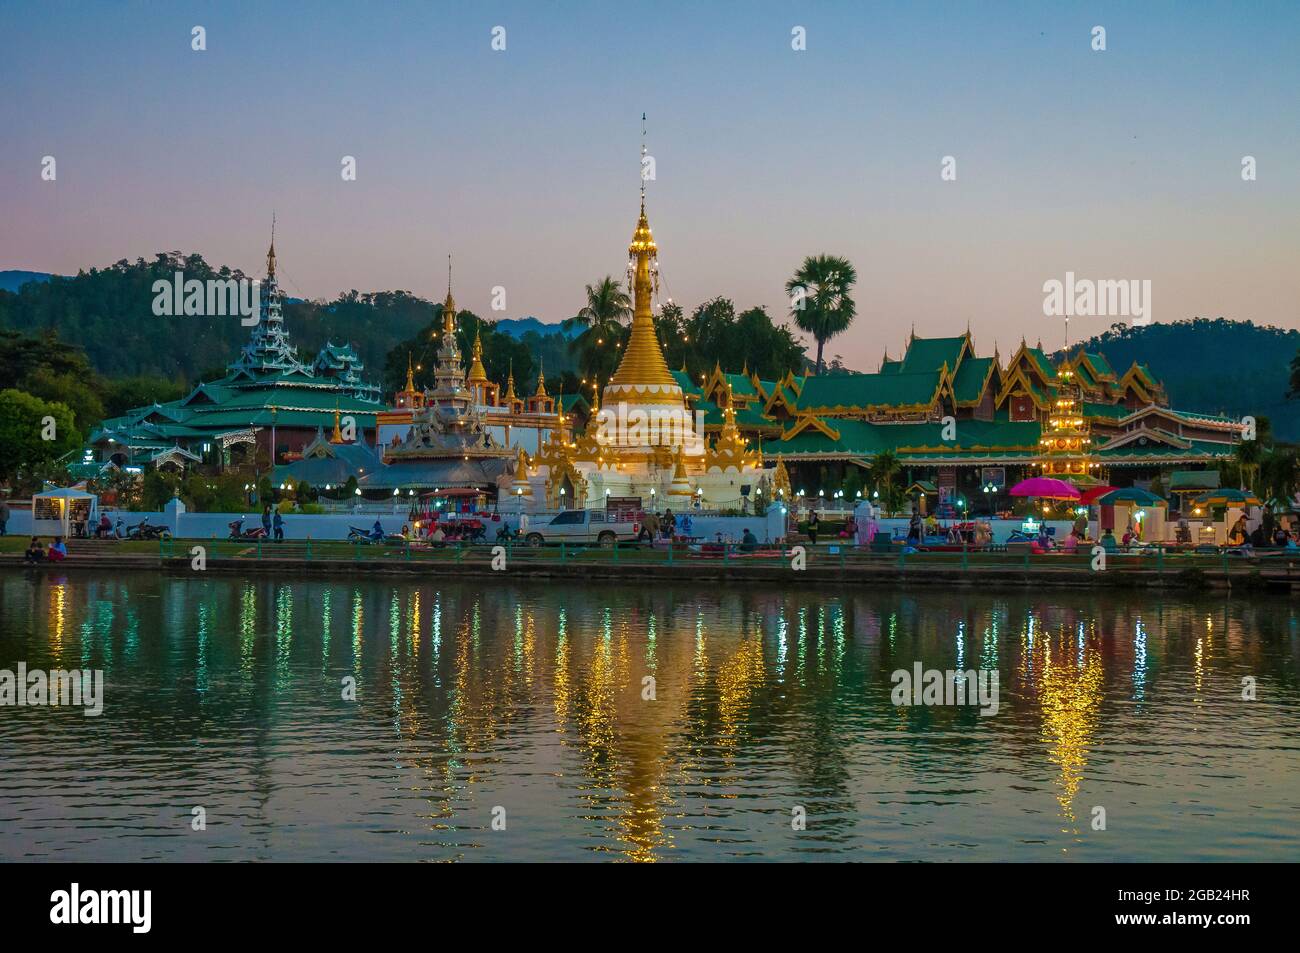 Evening on Lake Jong Kham at Mae Hong Son, northern Thailand Stock Photo